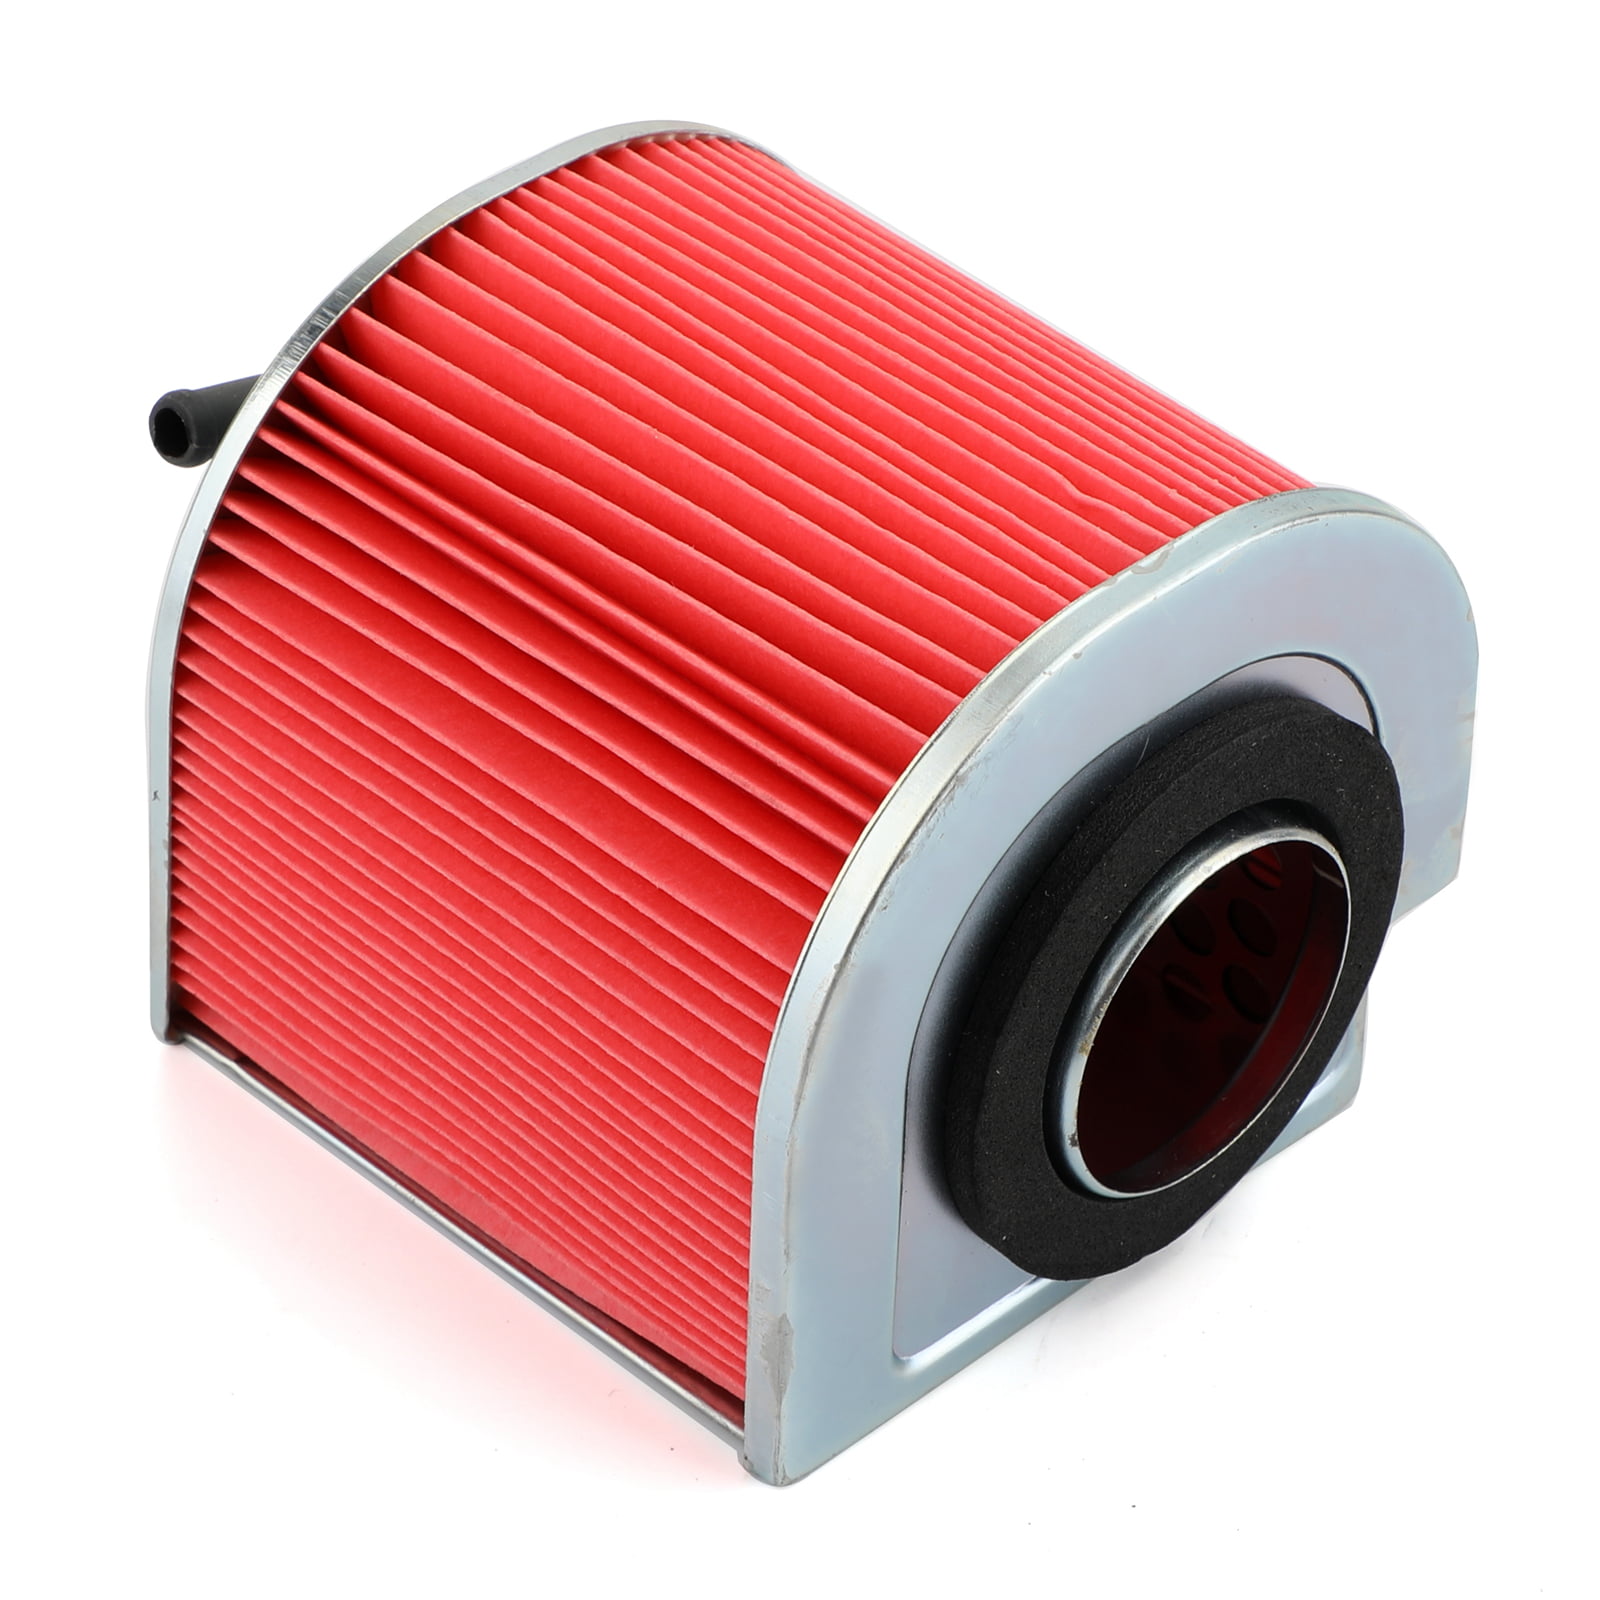 Air filter for Honda CA 125 Rebel 95-00 17211-KEB-900